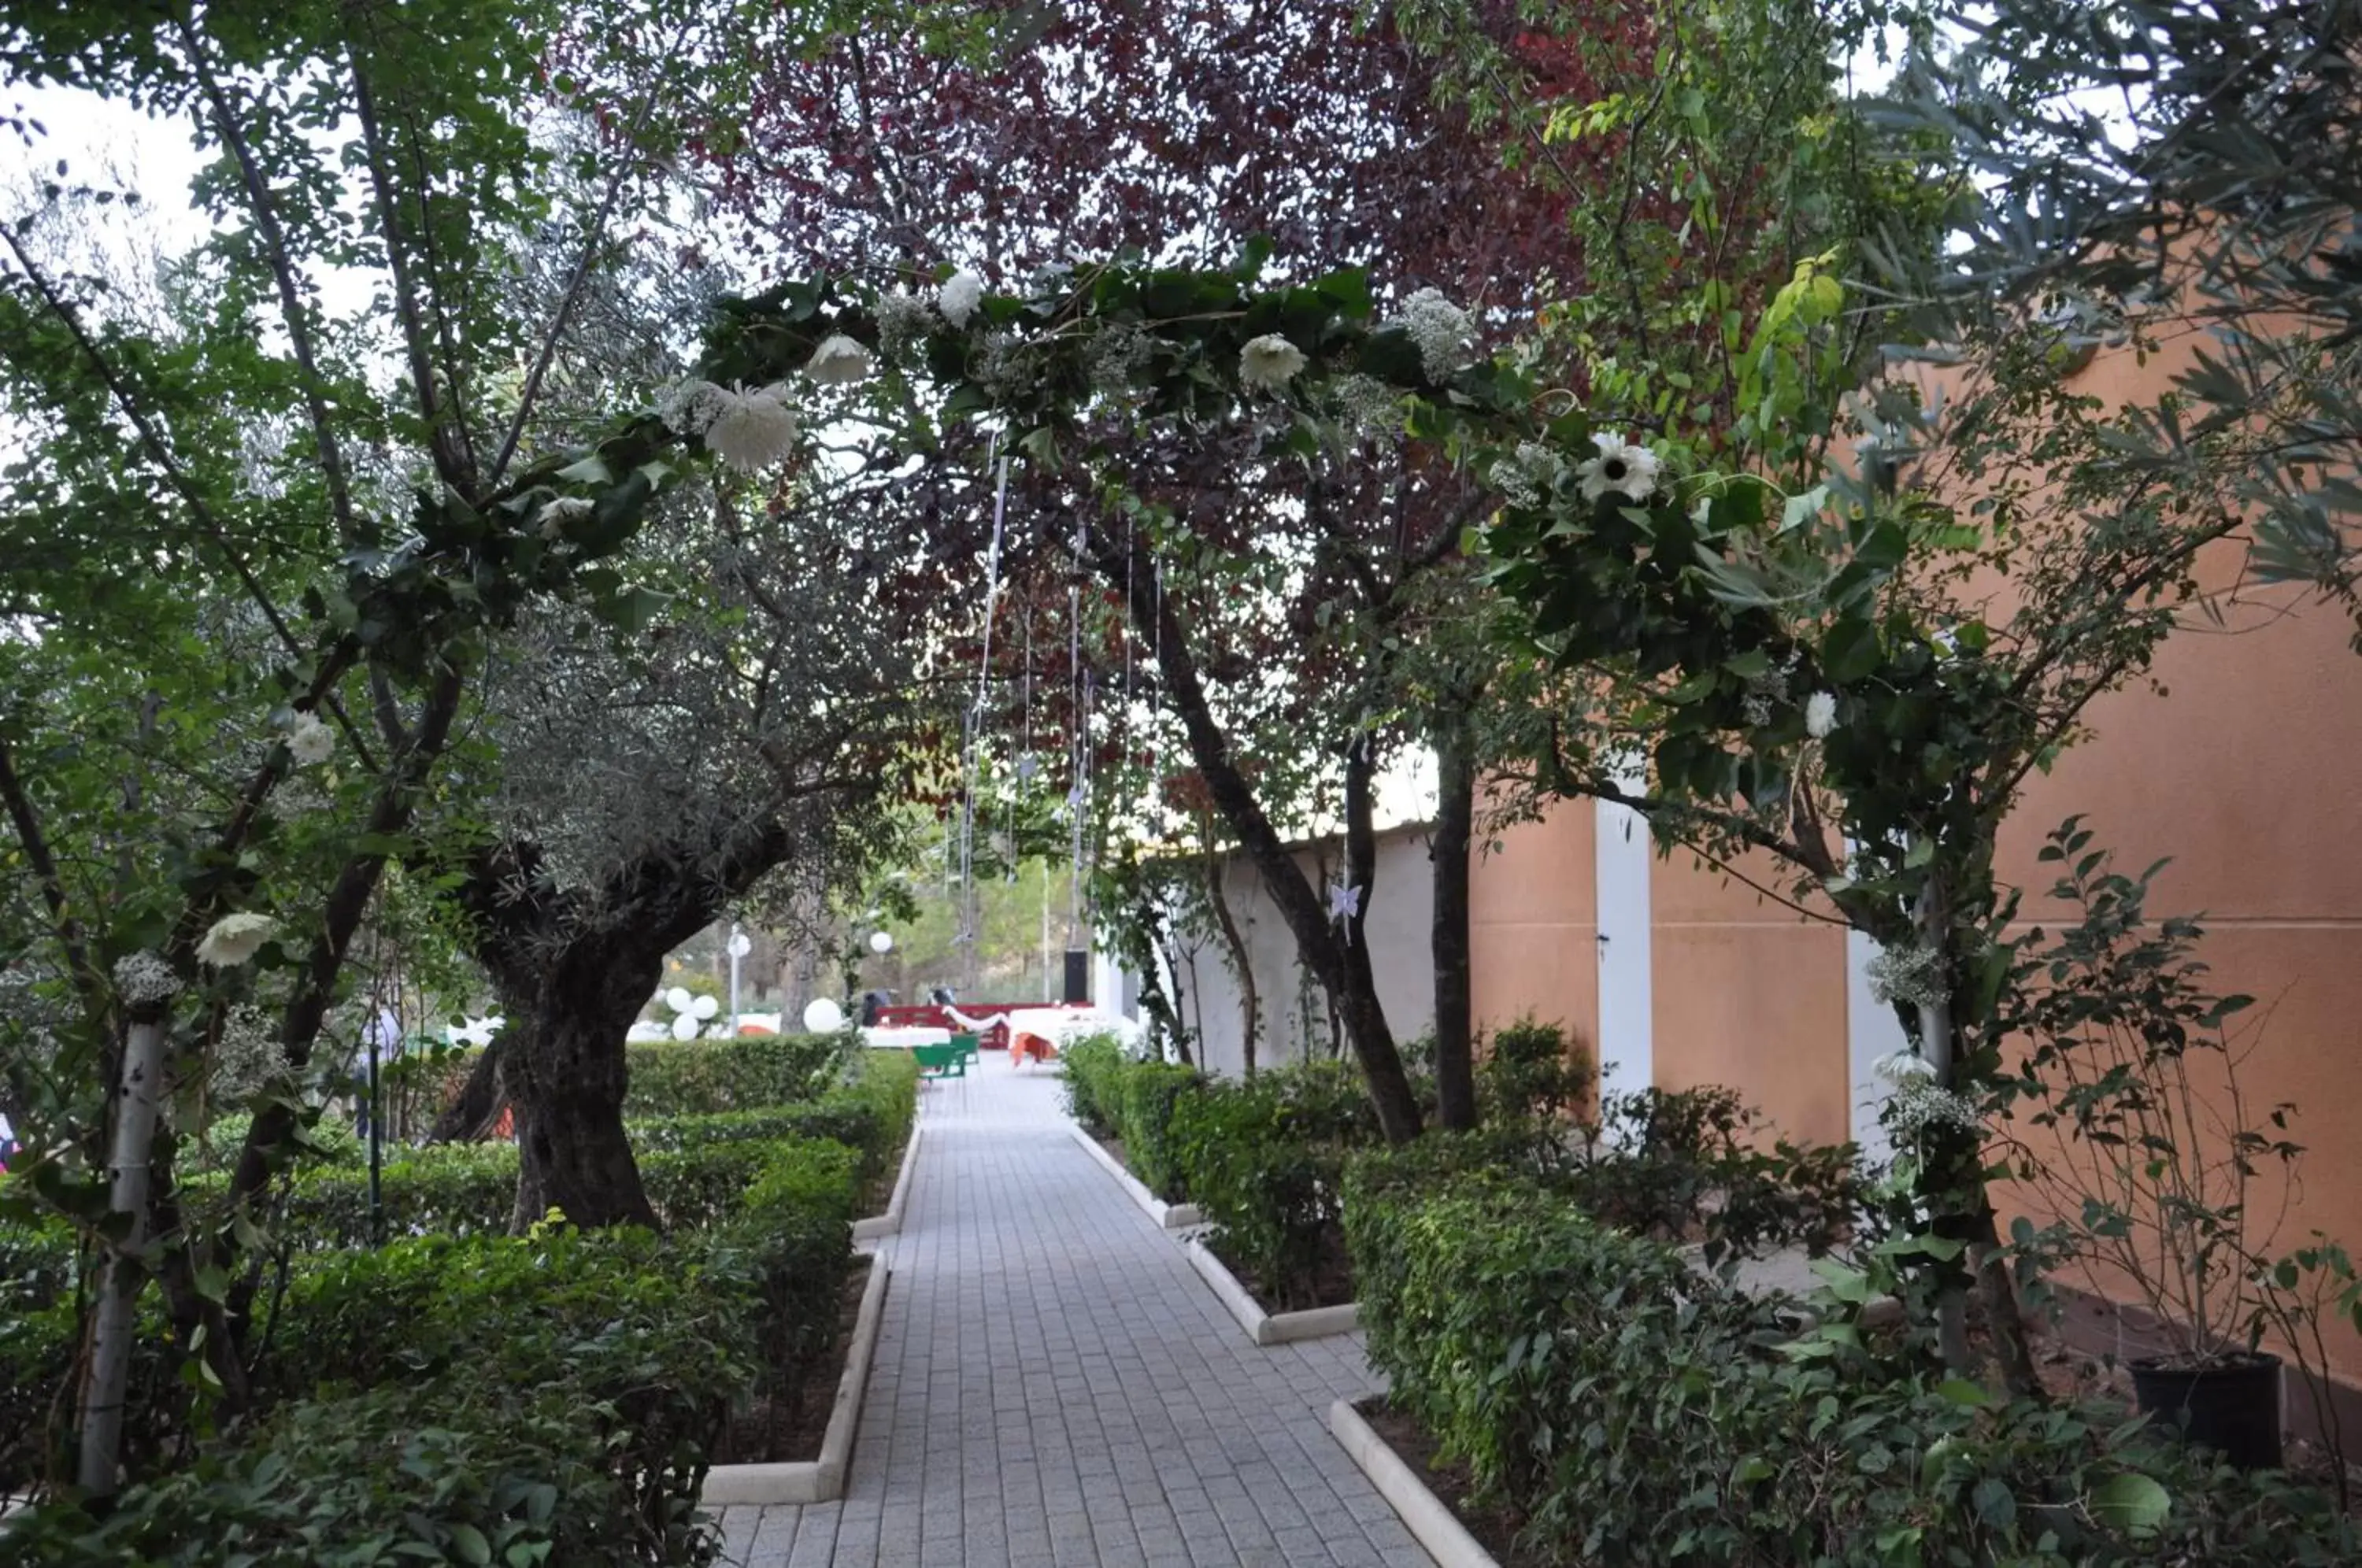 Area and facilities, Garden in La Fuensanta Hostal-Rural